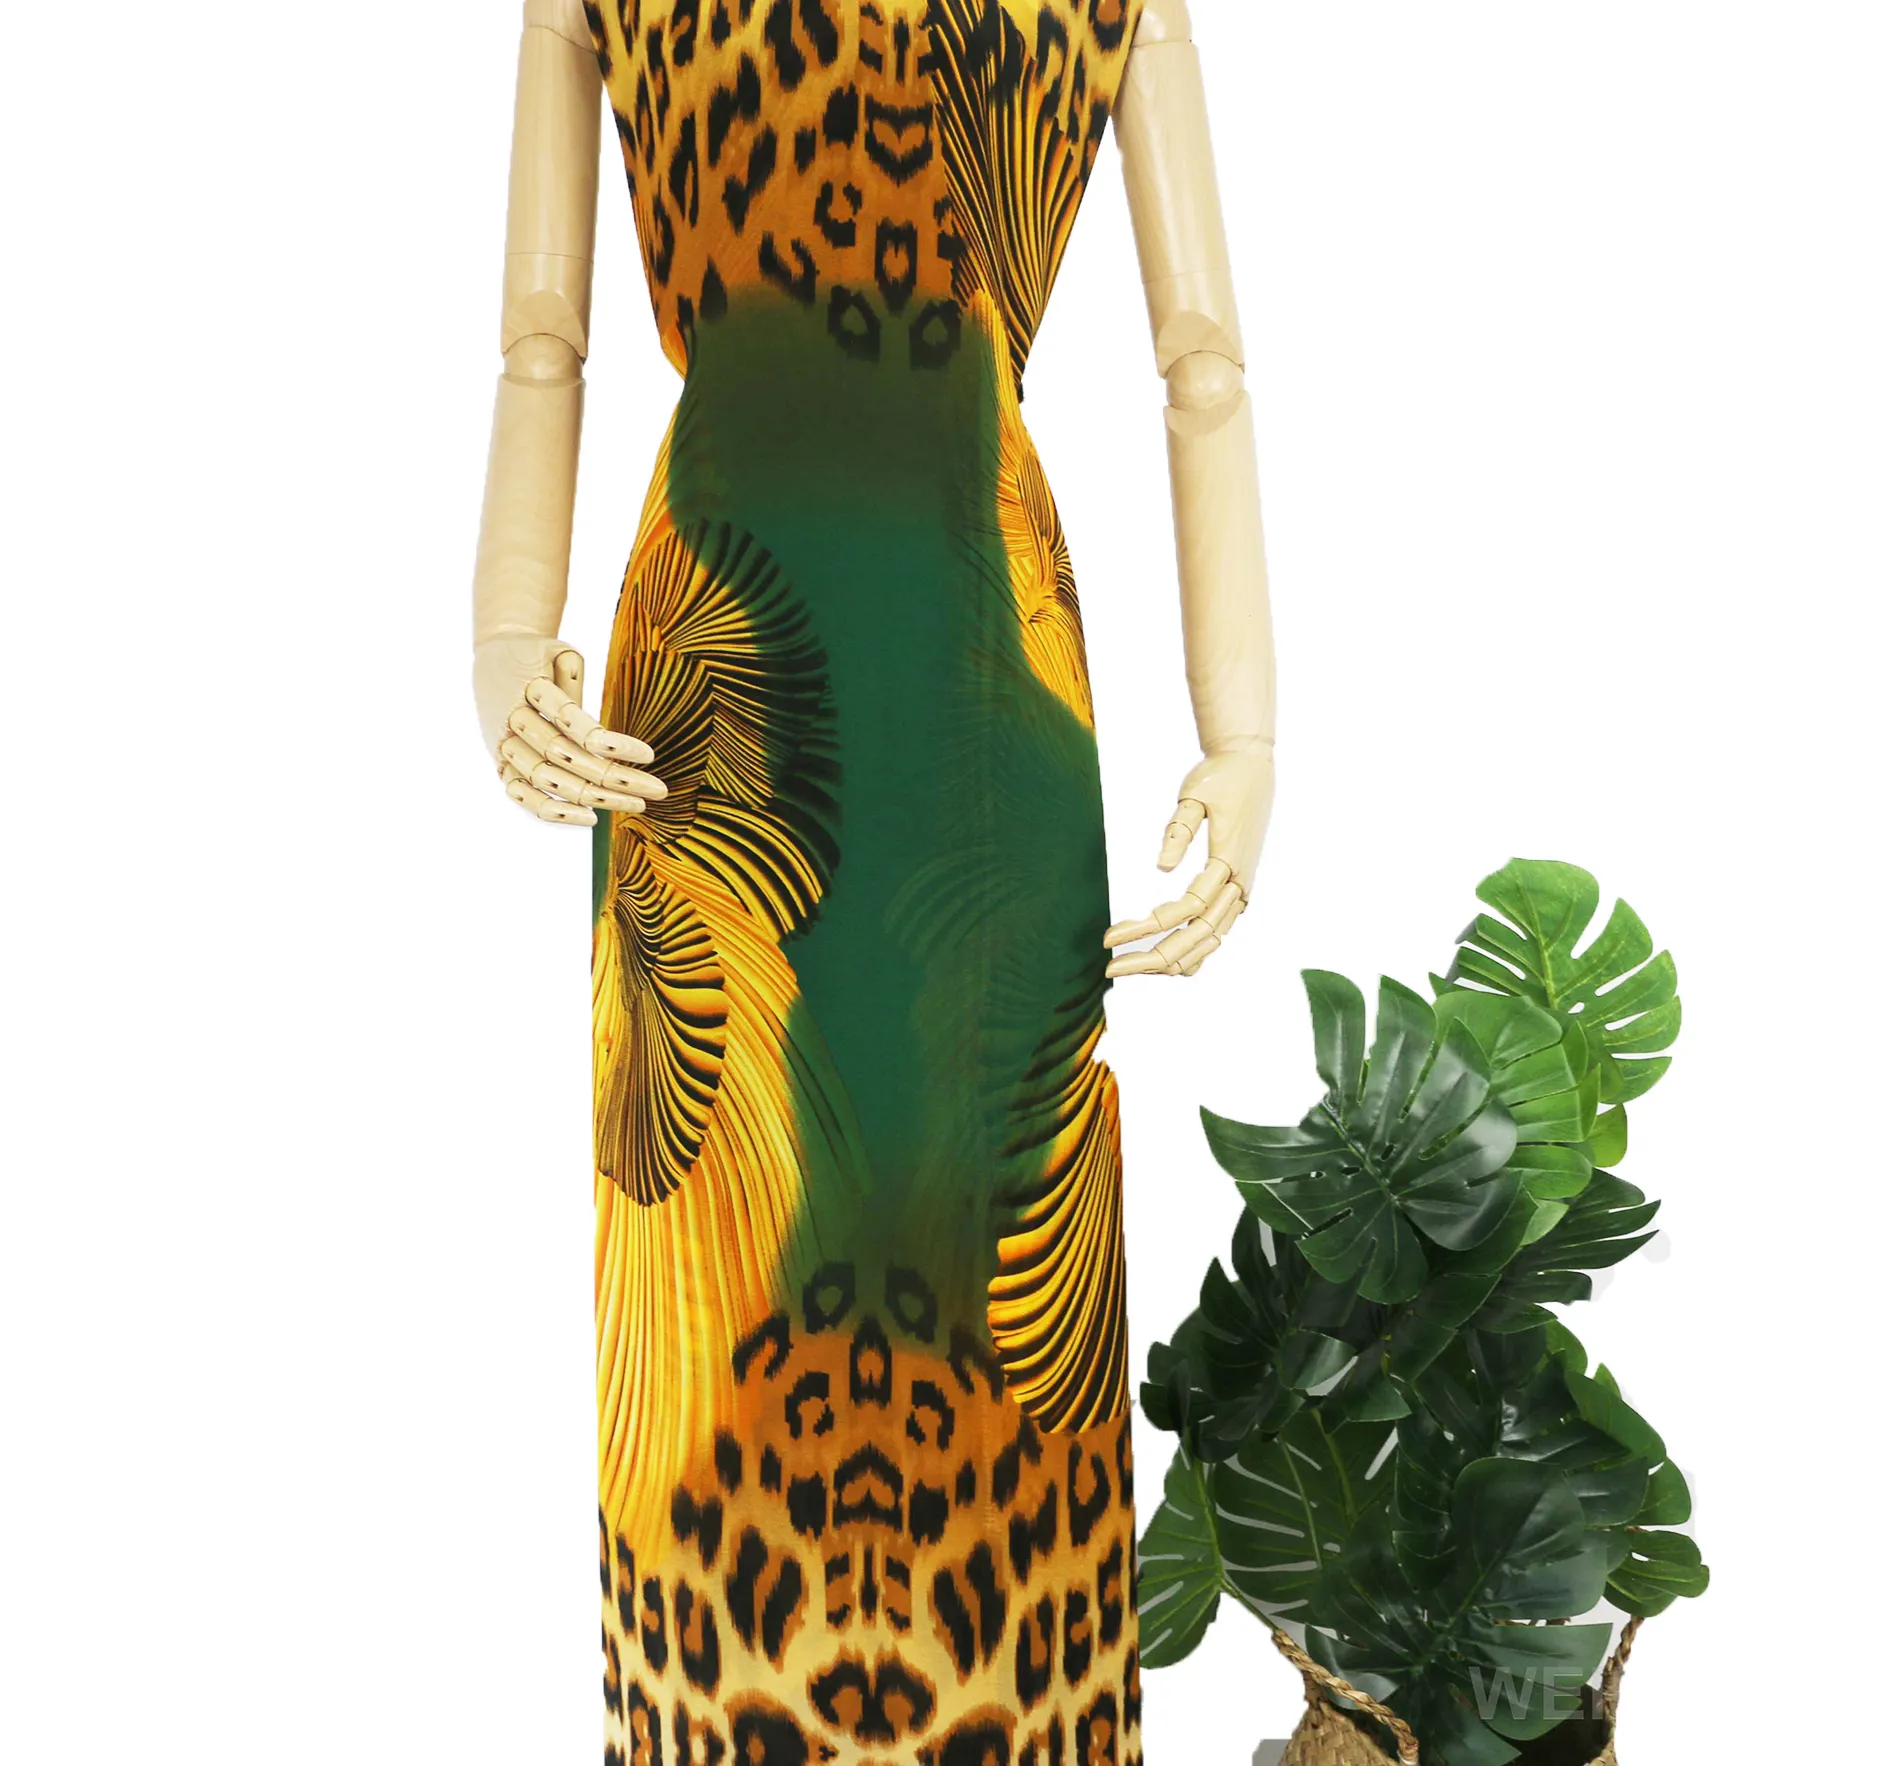 WI-A08 estojo de tecido da china leopardo tela padrão animal chiffon impresso design vestido somali